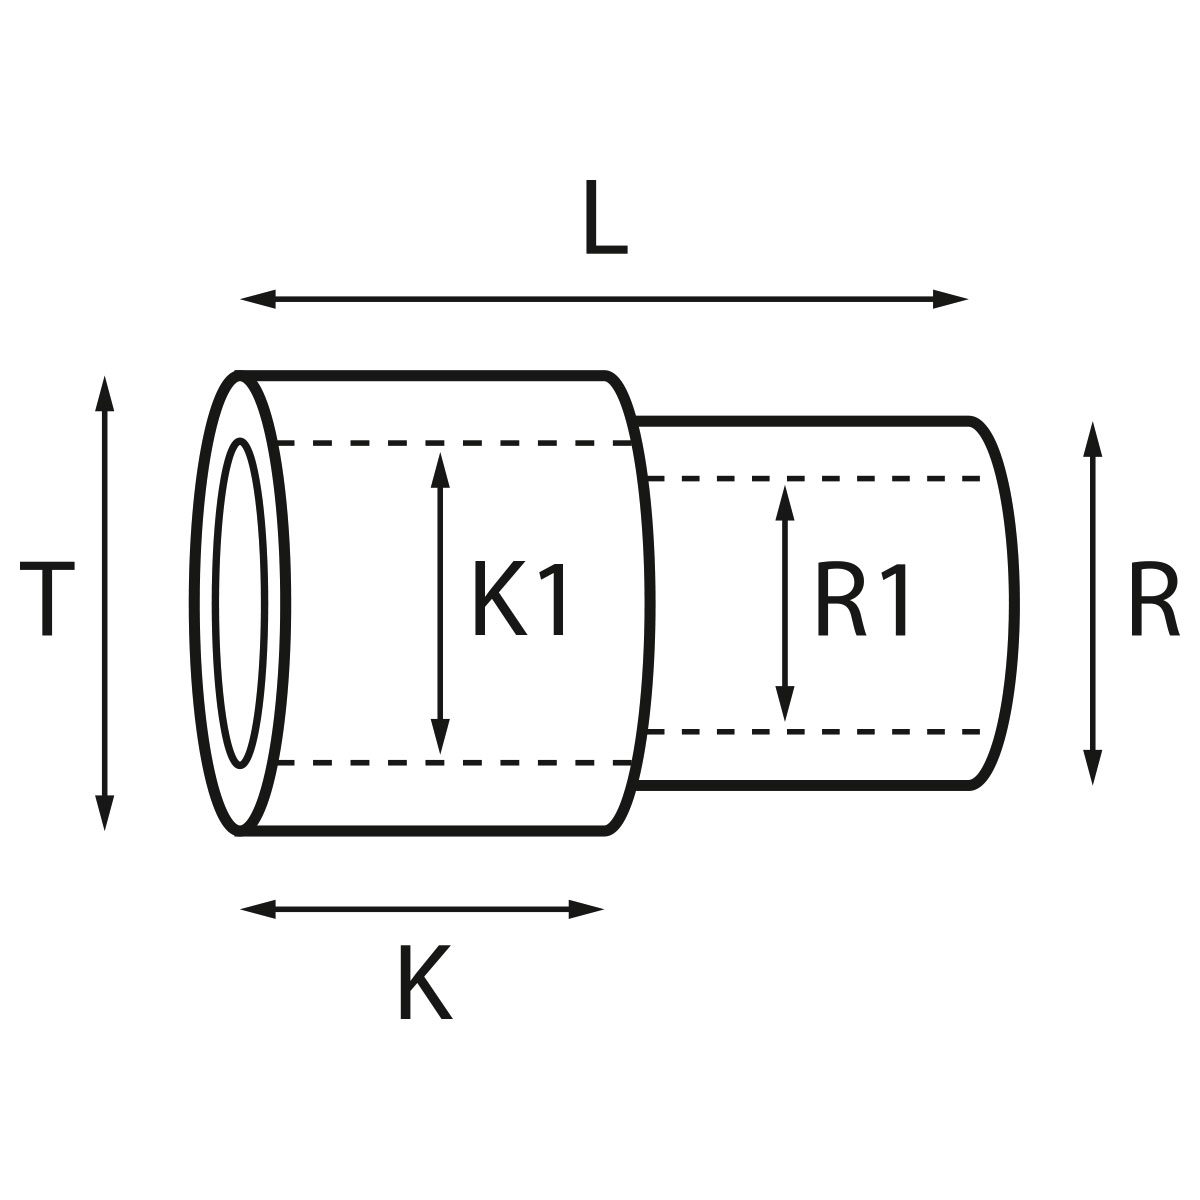 Gehäusetube Typ AS 13827, Tubus Ø 2,5 mm, Gesamtlänge 4,95 mm, für wasserdichte Kronen